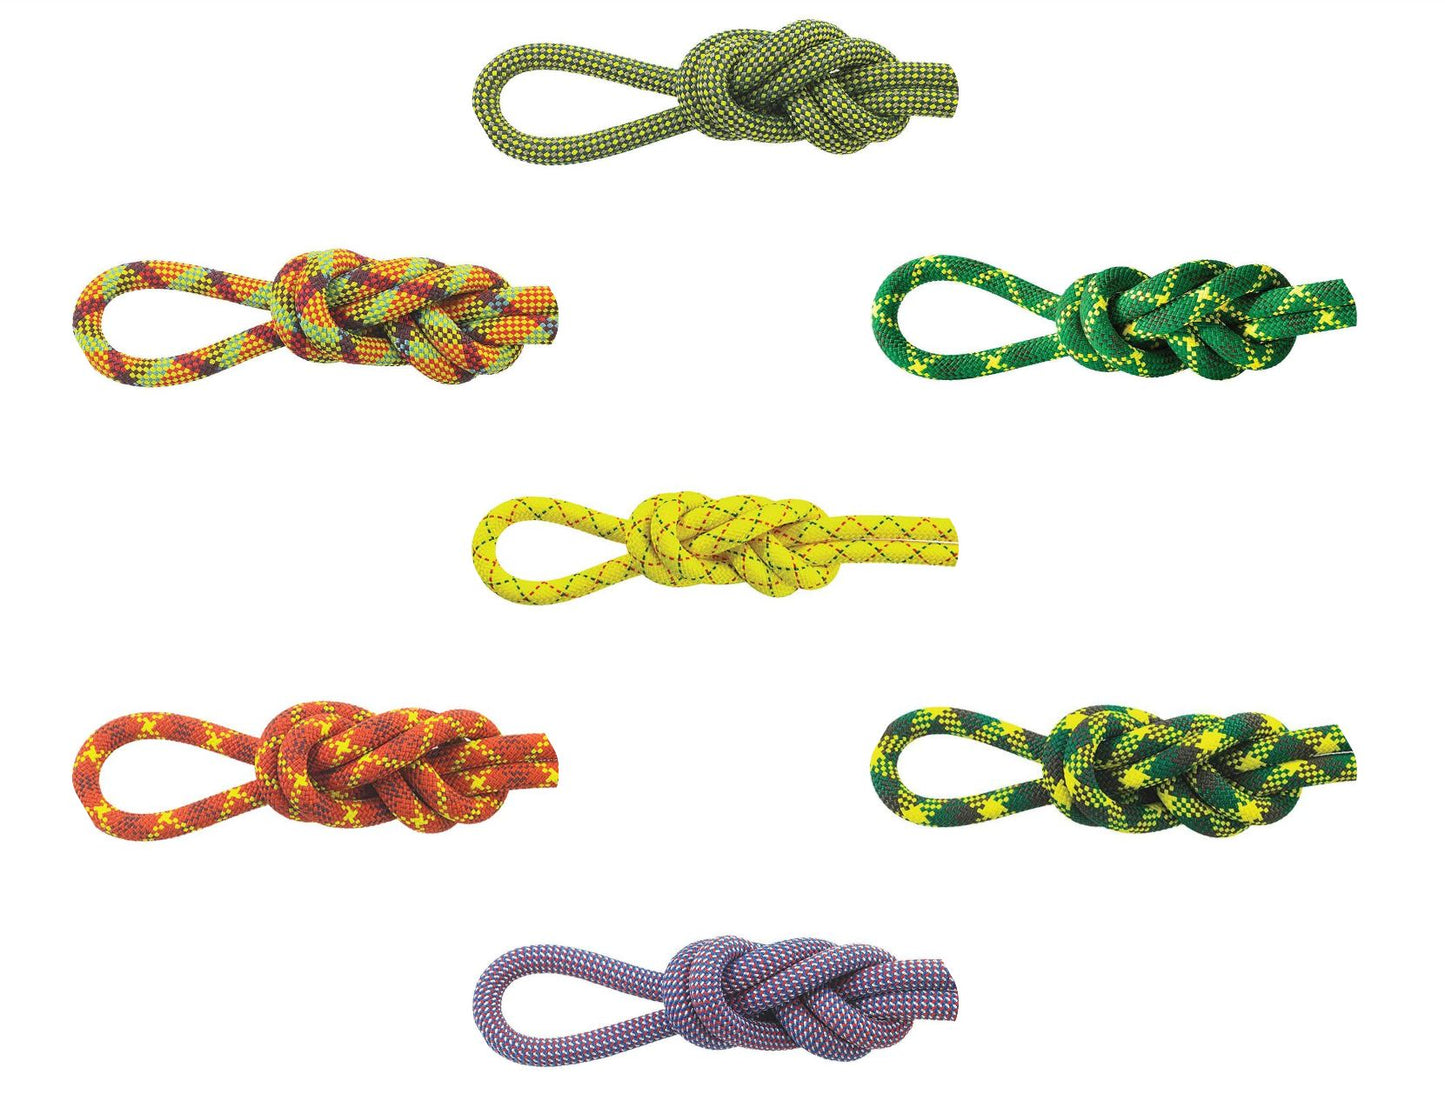 Apex Rope